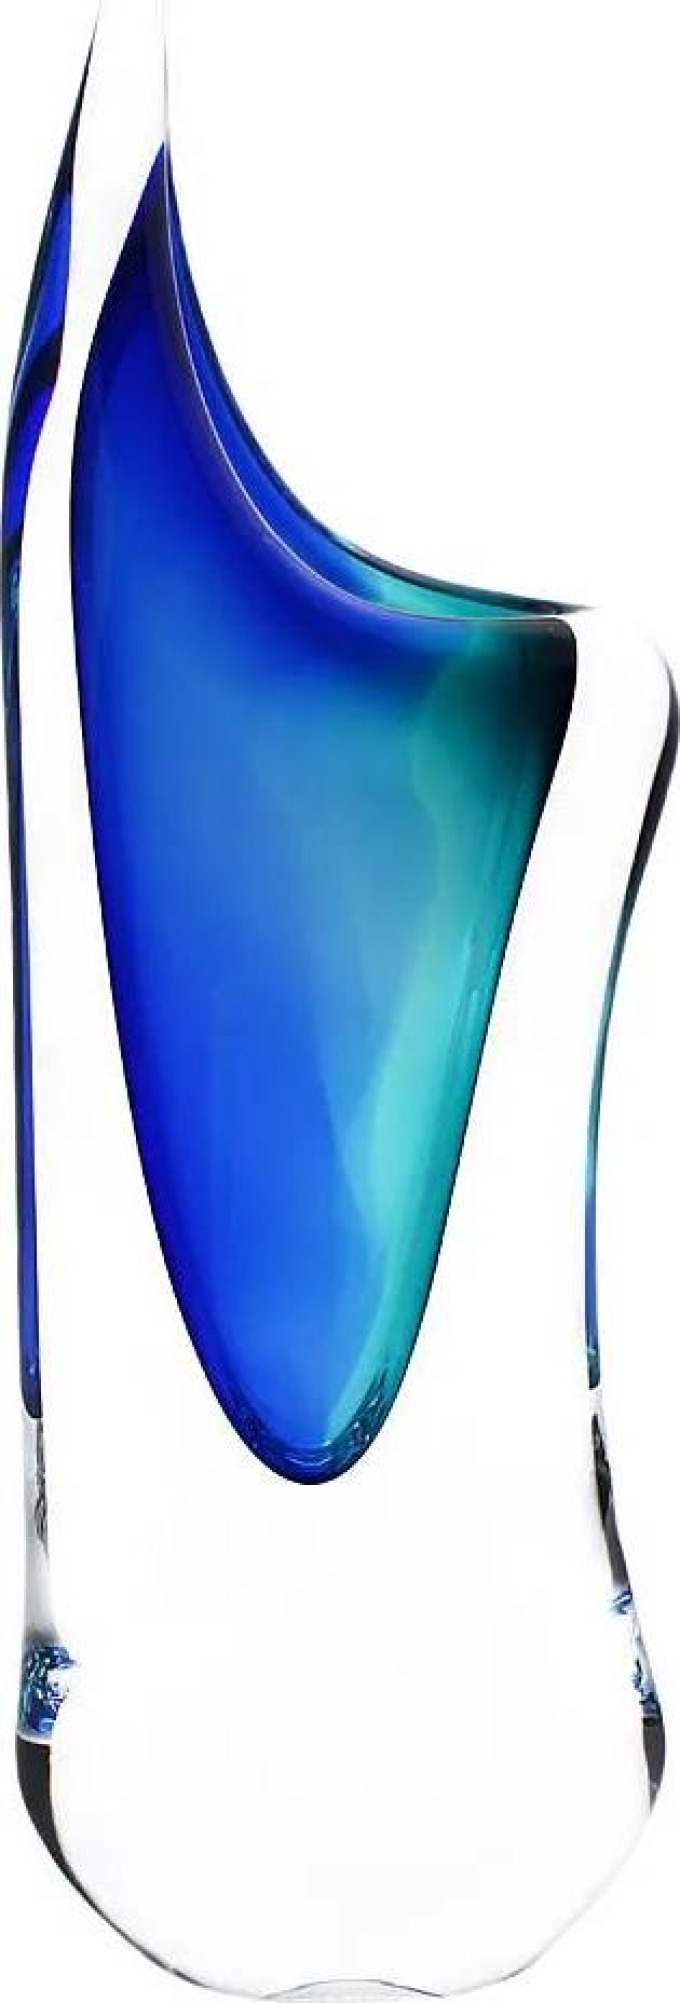 Skleněná váza hutní 04, modrá a tyrkysová, 29 cm | České hutní sklo od Artcristal Bohemia